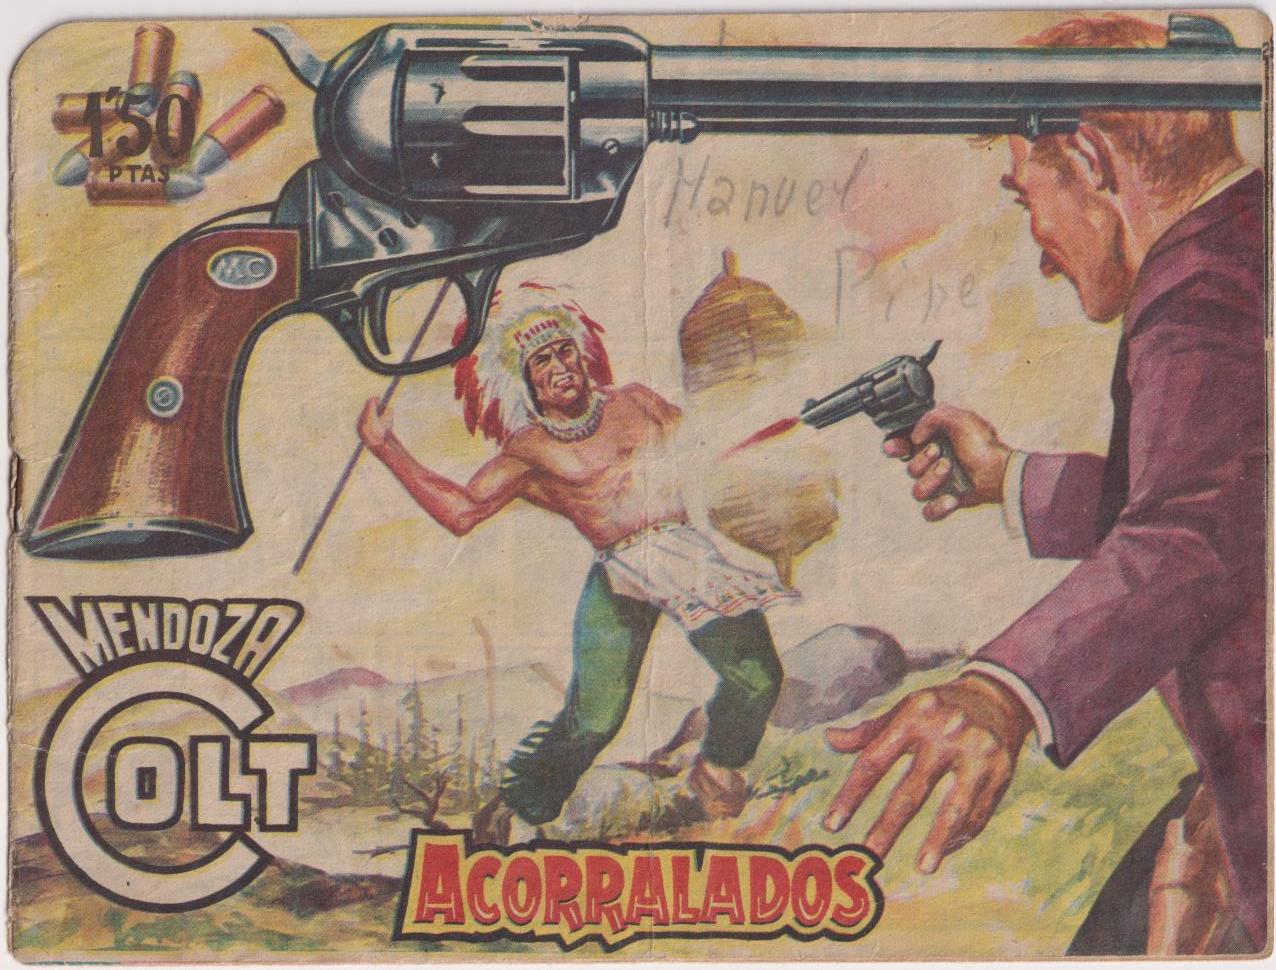 Mendoza Colt nº 76. Rollán 1954